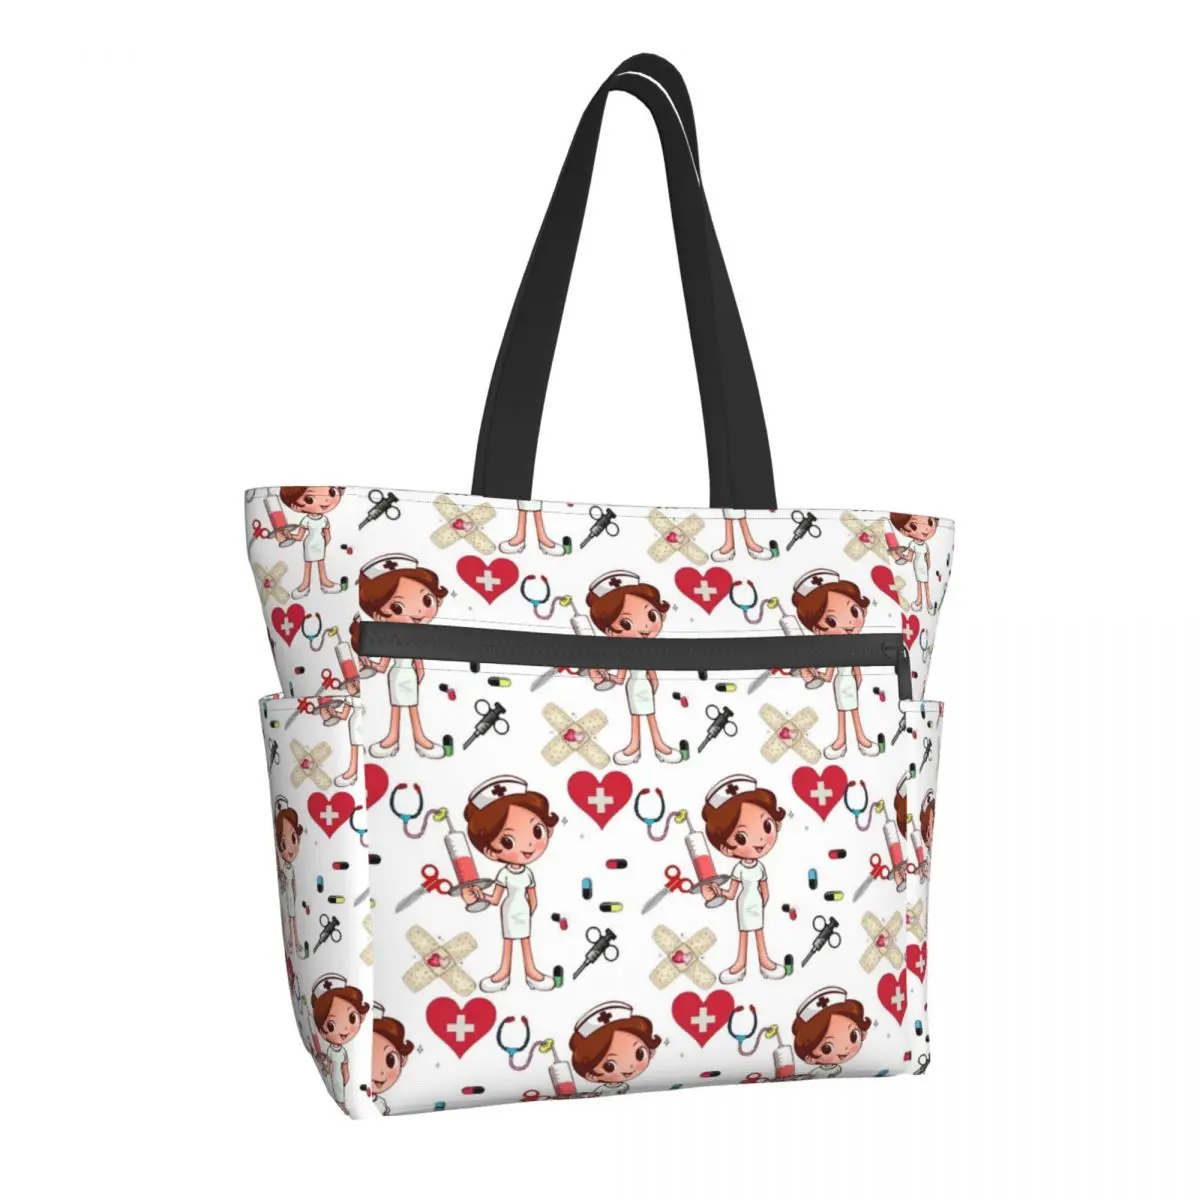 

Бесшумная женская сумка с принтом медсестры, модная сумка для покупок с большой емкостью, многоразовая сумка через плечо, дорожная сумка дл...